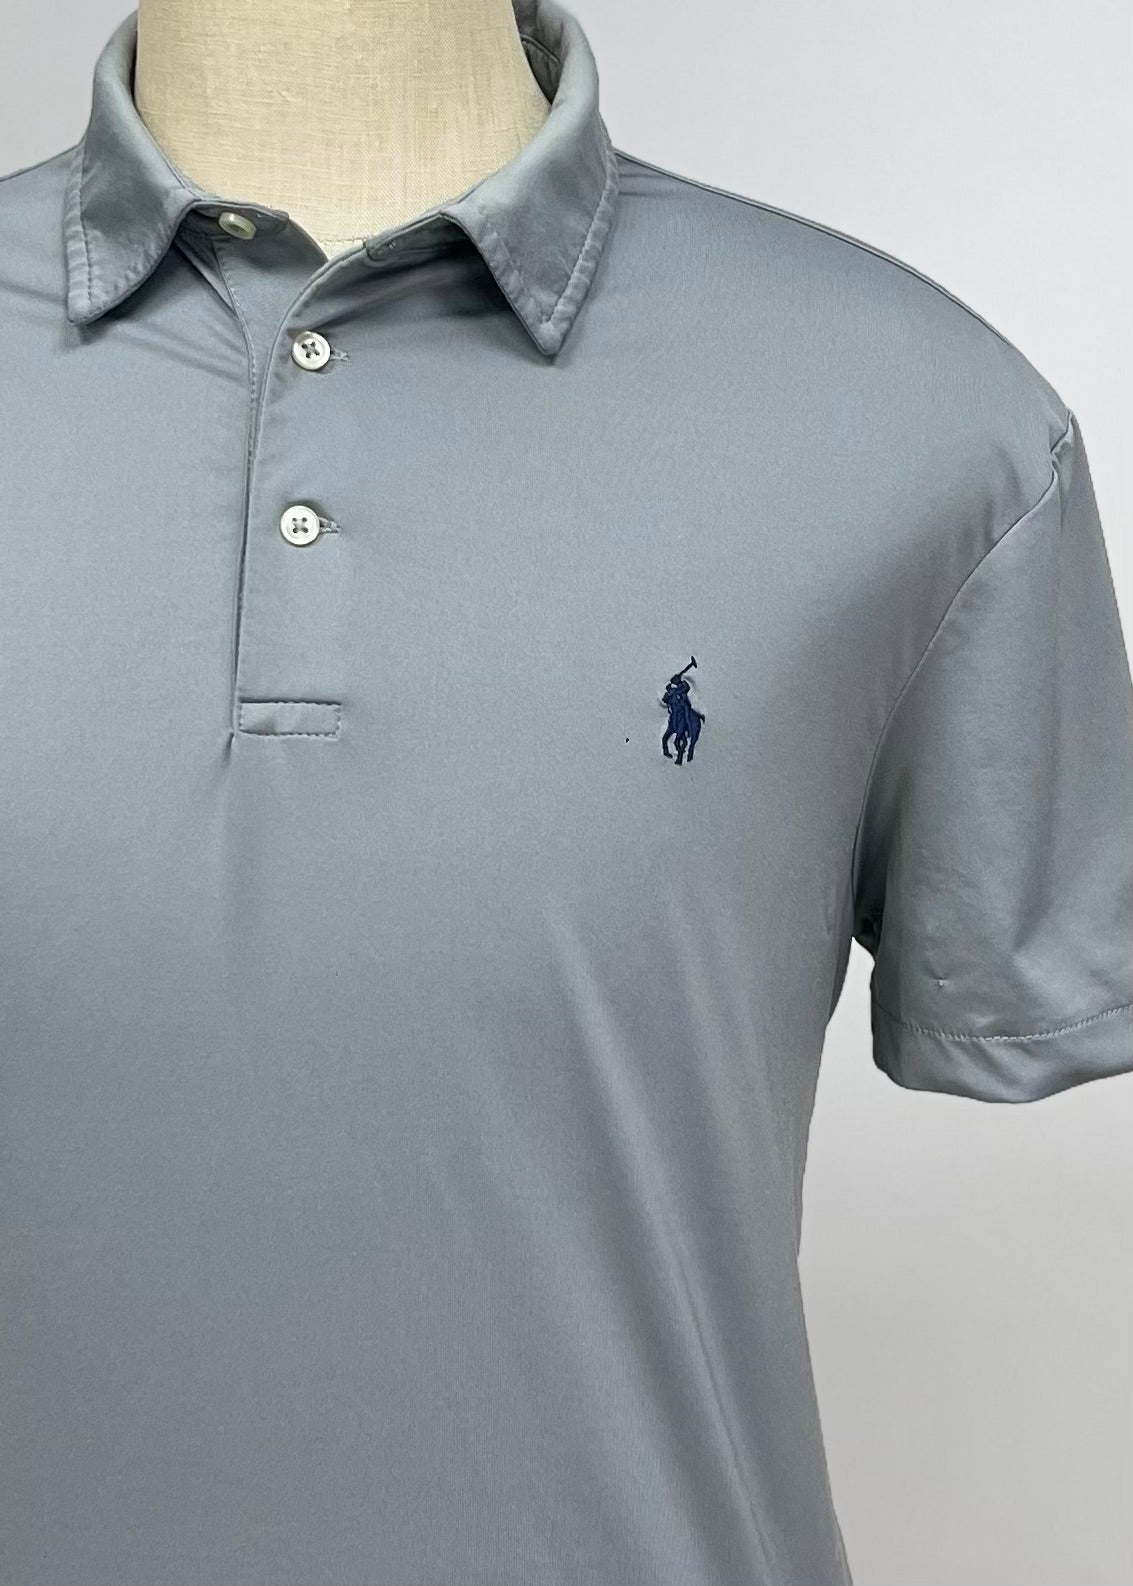 Camiseta Polo Ralph Lauren 🏇🏼 Color gris Talla L Entalle Regular (ver descripción)